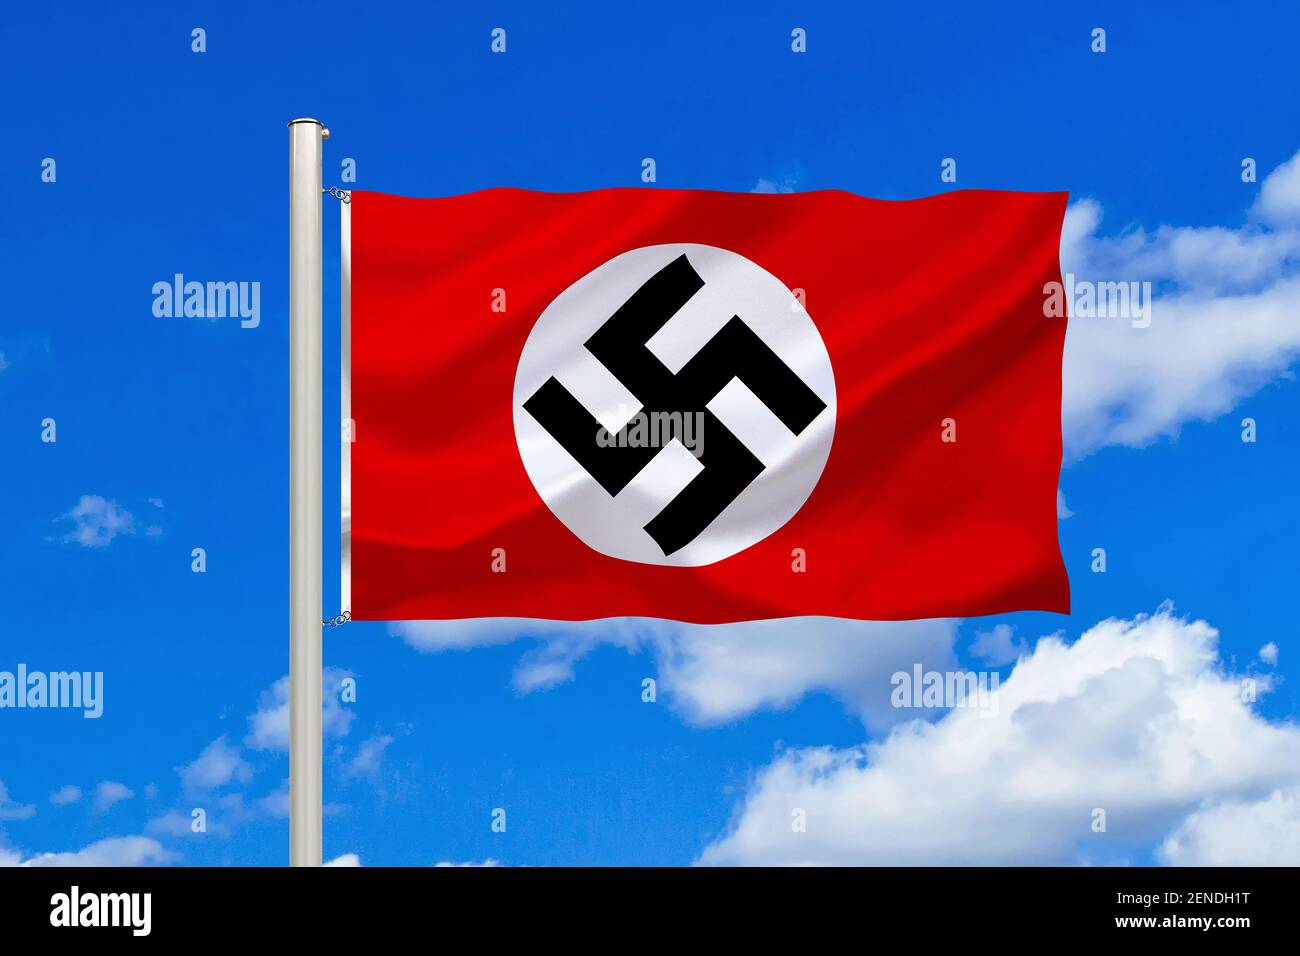 https://c8.alamy.com/compfr/2endh1t/die-heute-verbotene-flagge-vom-dritten-reich-fahne-der-nazis-hakenkreuzfahne-verboten-deutschland-2endh1t.jpg